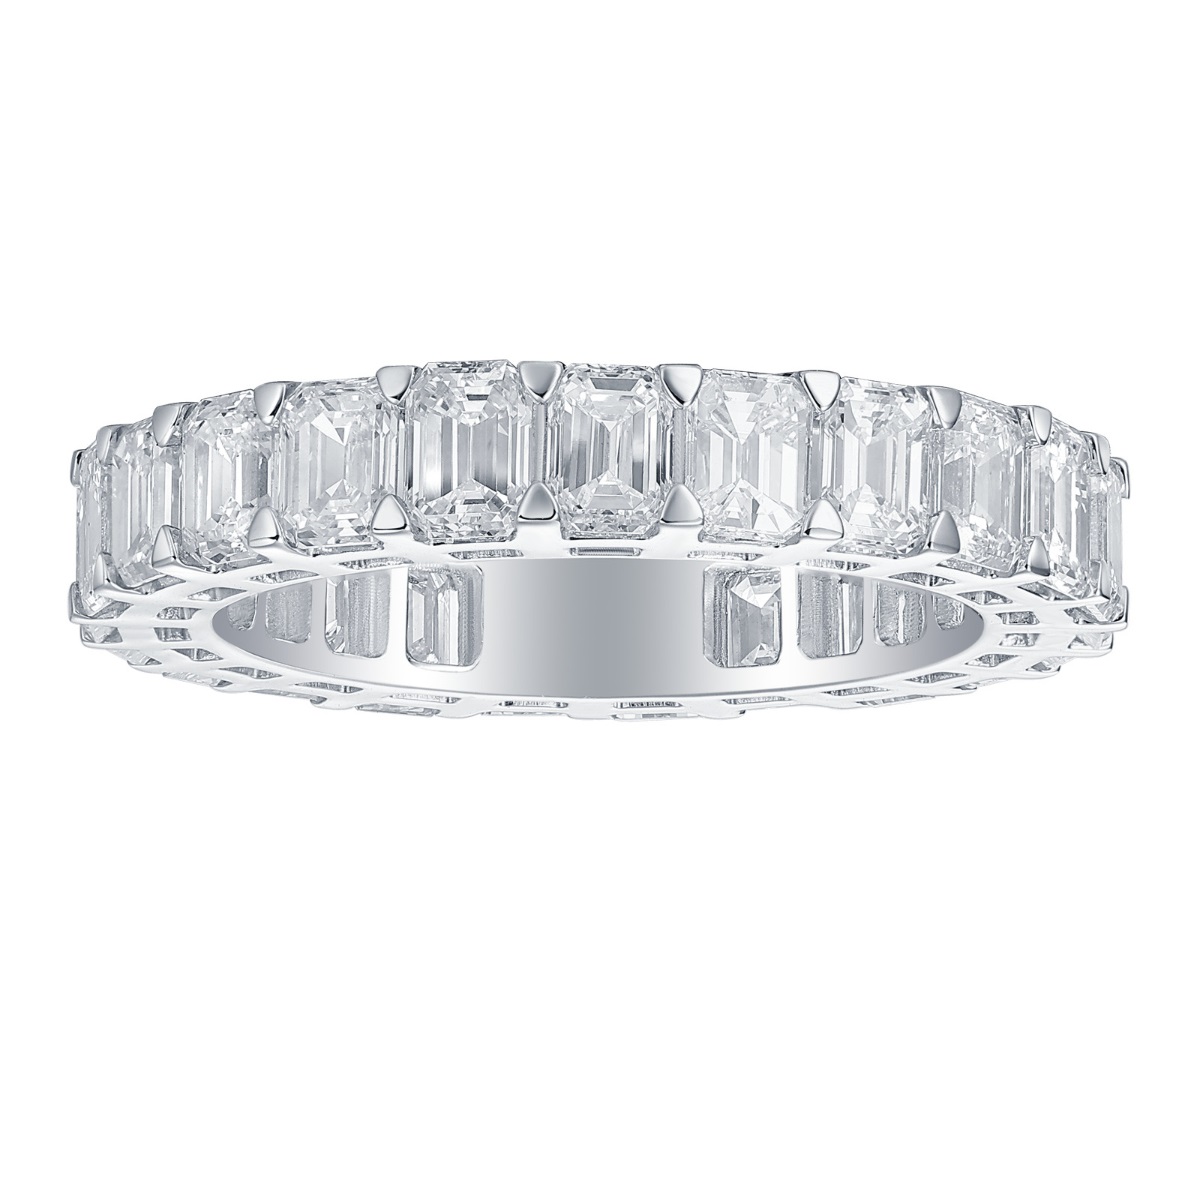 R36913WHT – 18K White Gold Diamond Ring, 4.85 TCW